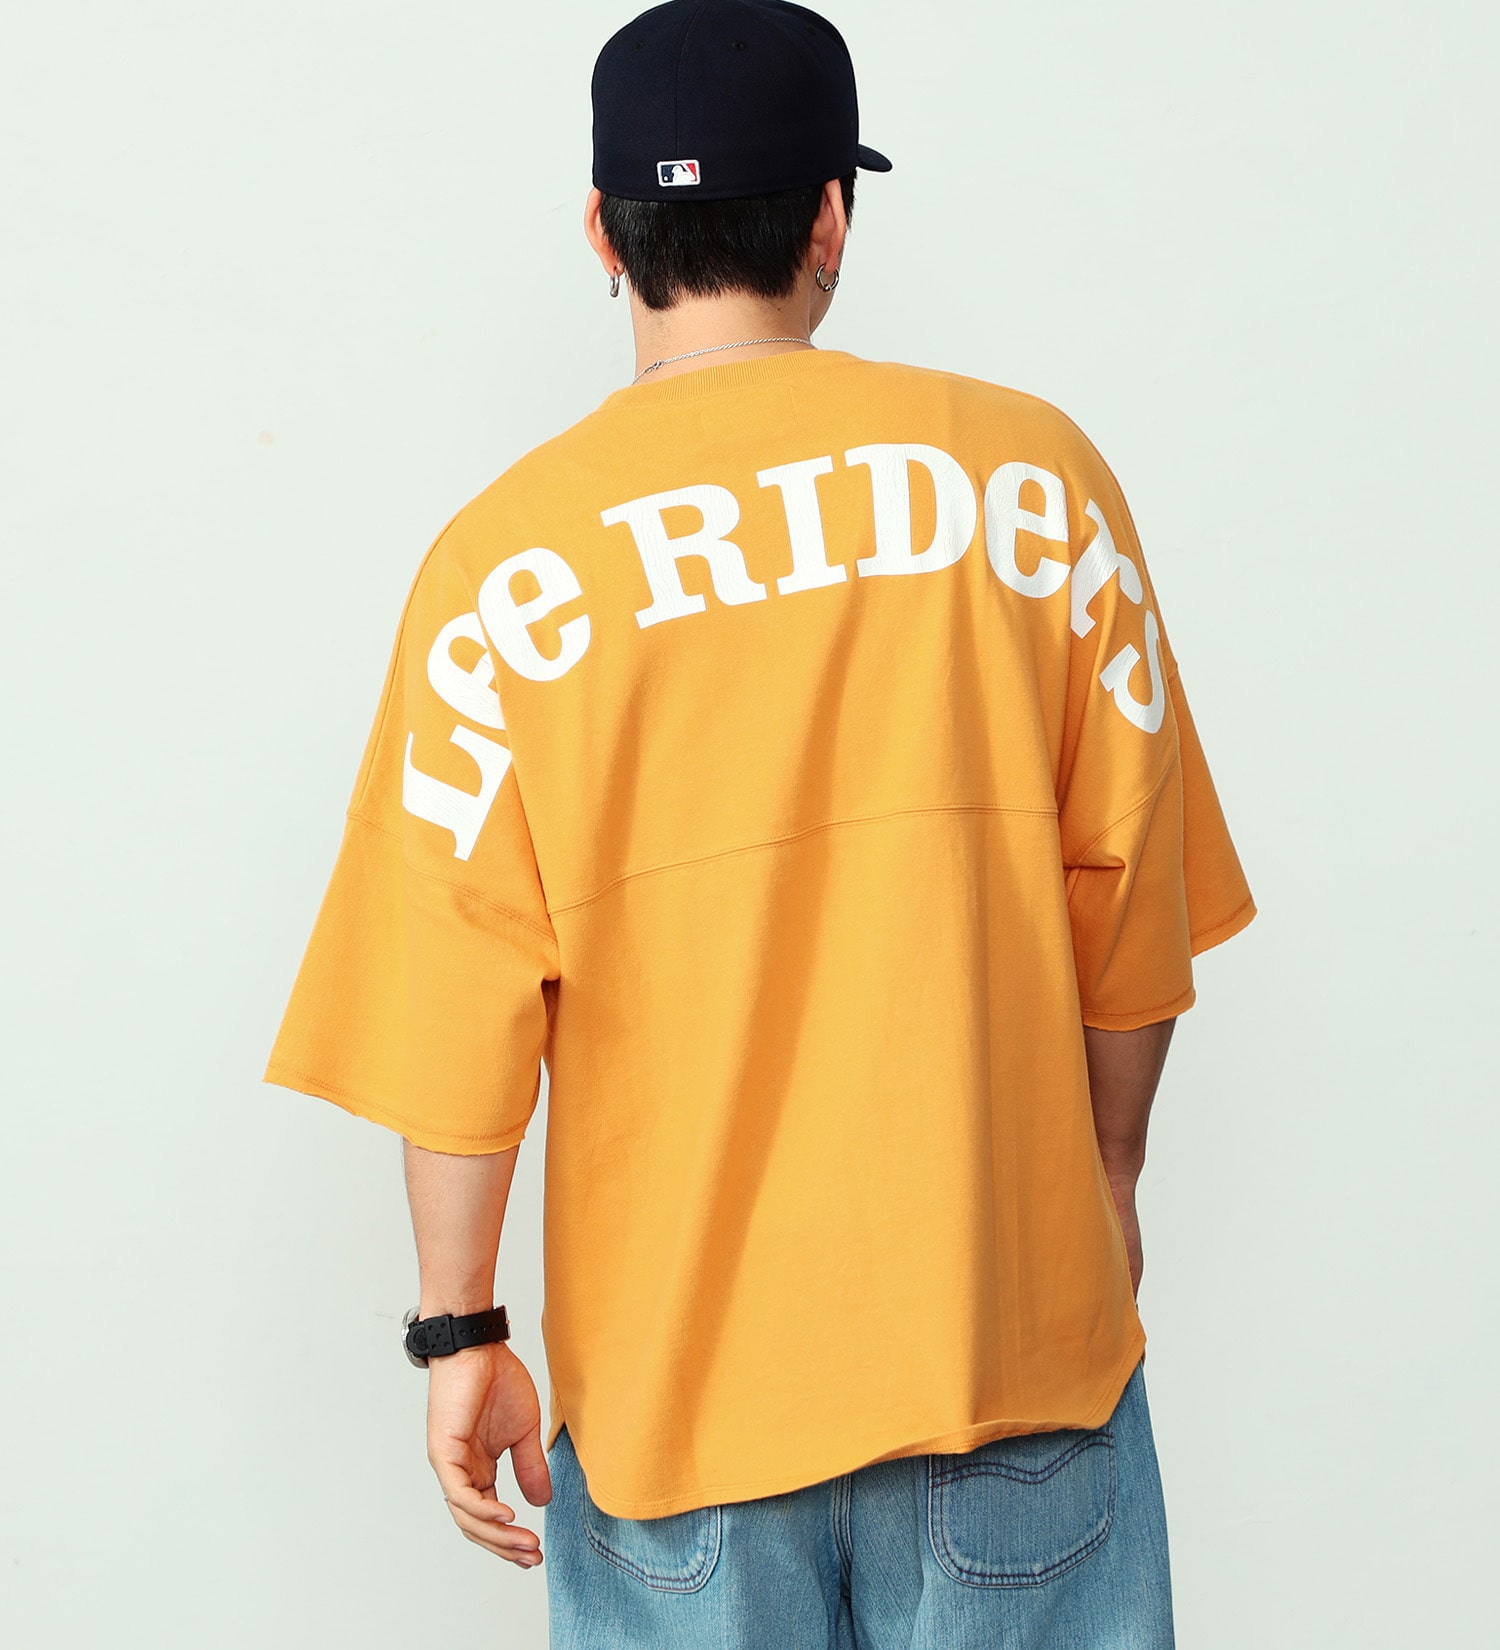 Lee(リー)のバックアーチ ショートスリーブTee|トップス/Tシャツ/カットソー/メンズ|オレンジ